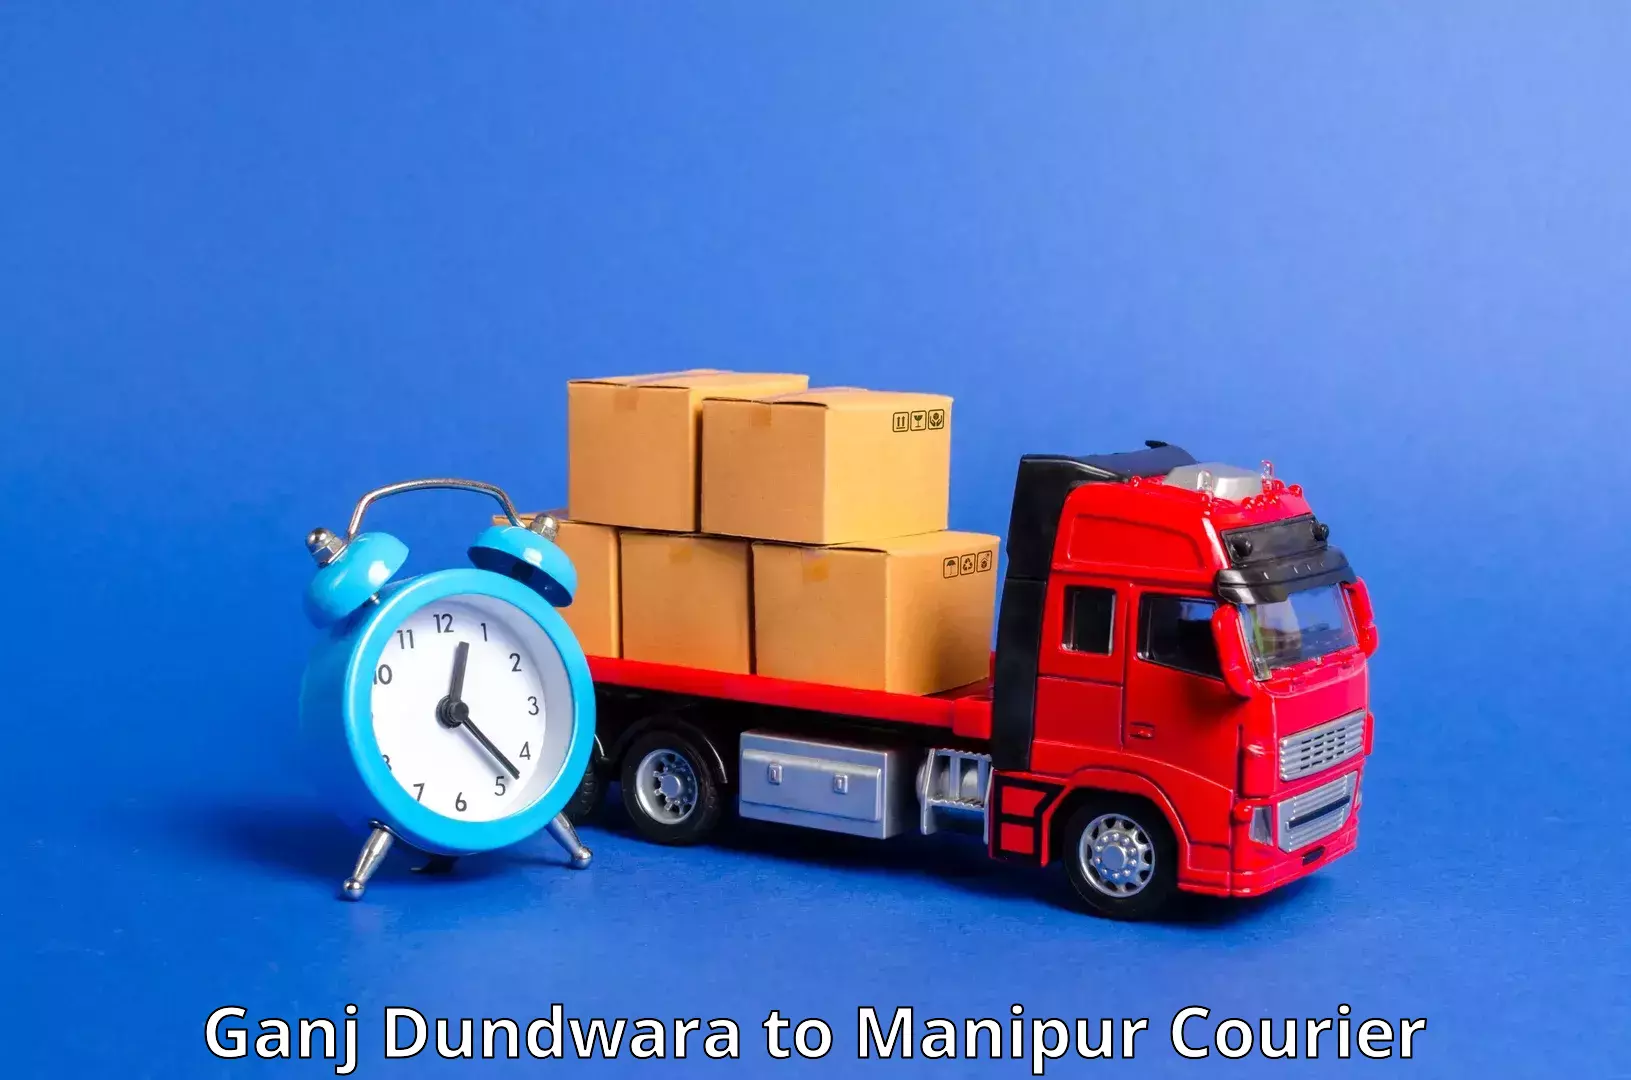 24/7 courier service in Ganj Dundwara to Jiribam